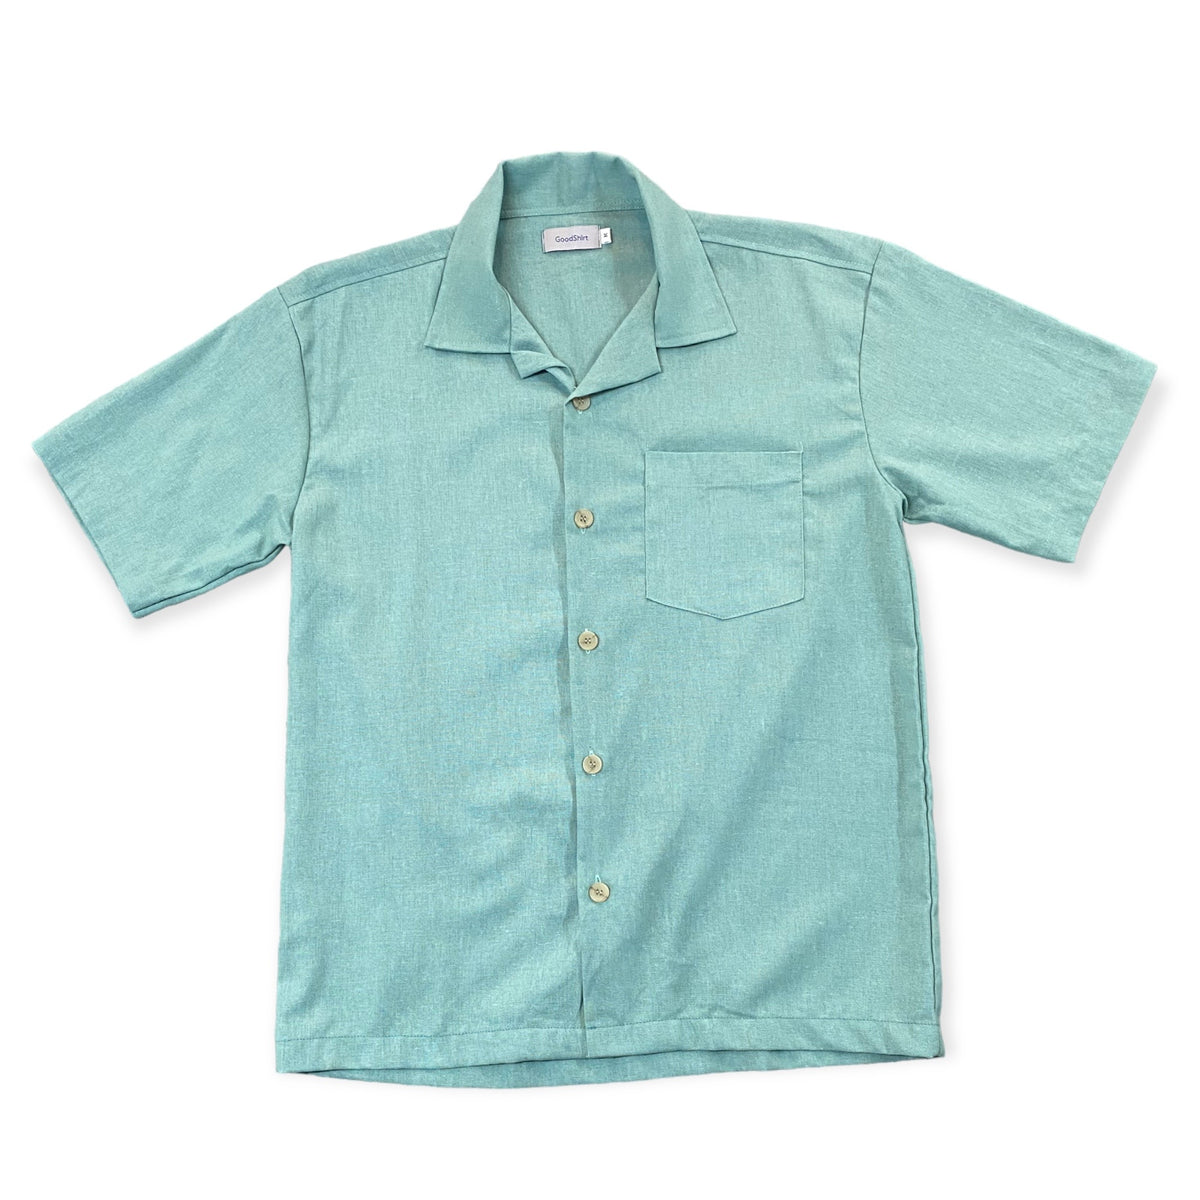 Good Shirt Short Sleeve Open Collar Shirt - Green